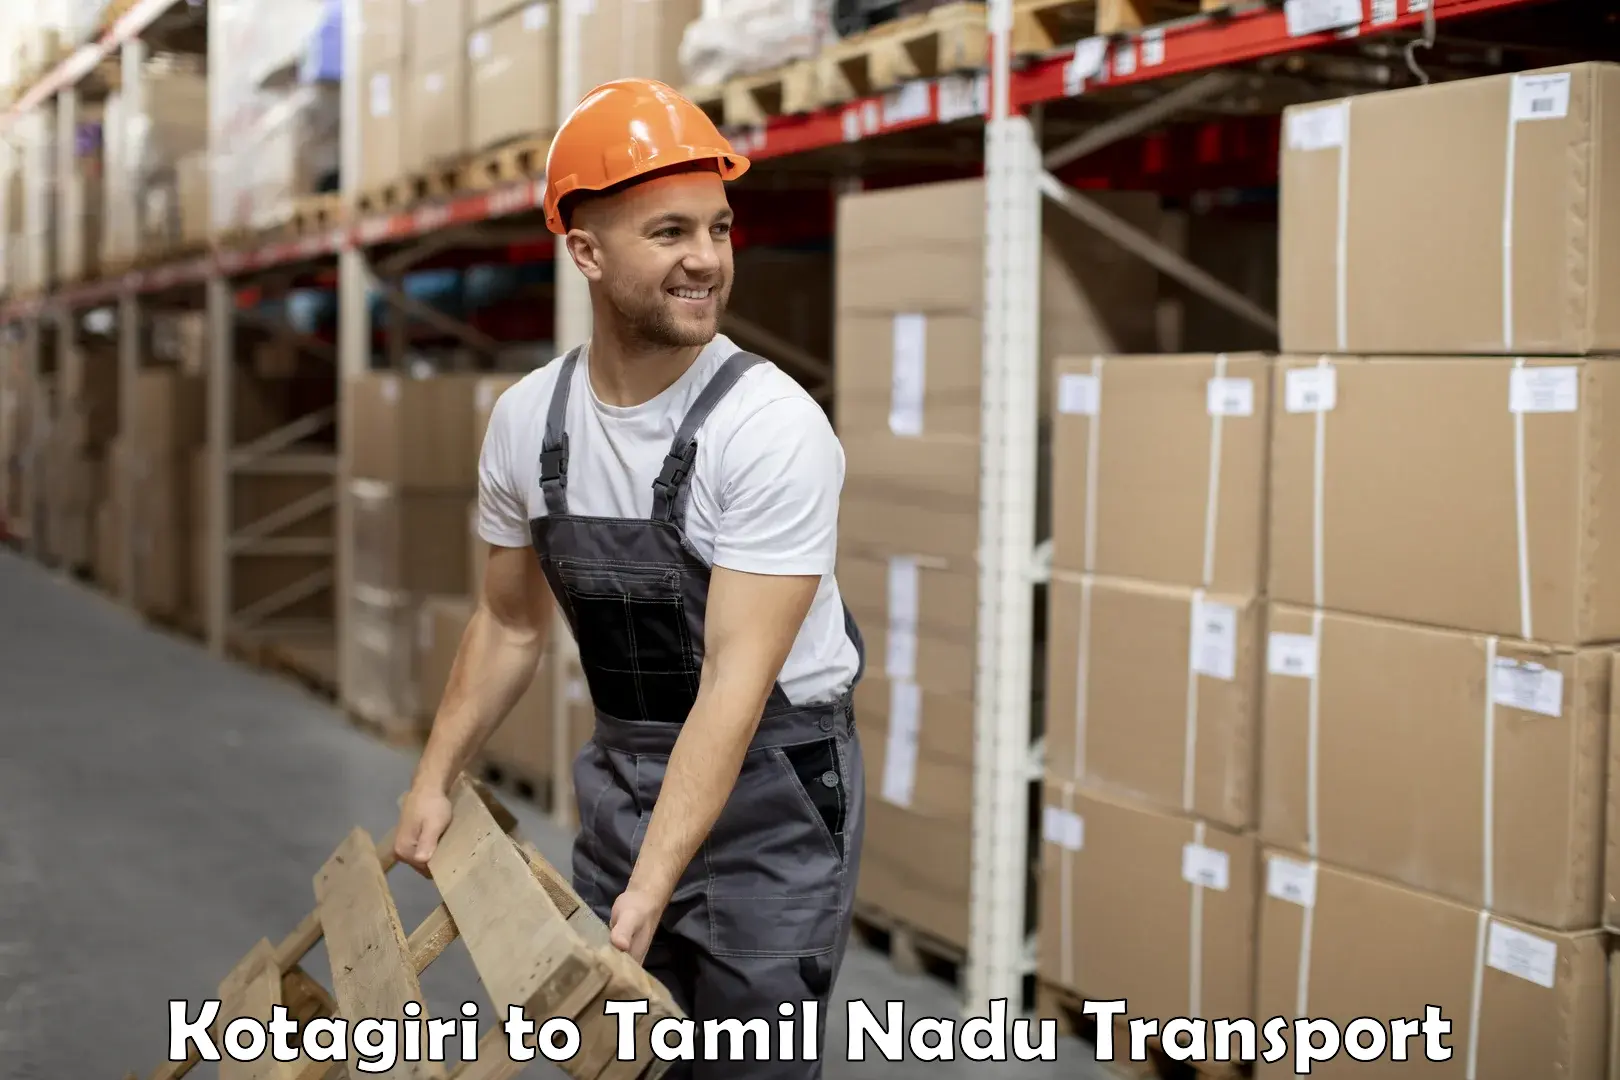 Goods delivery service Kotagiri to Thiruvadanai